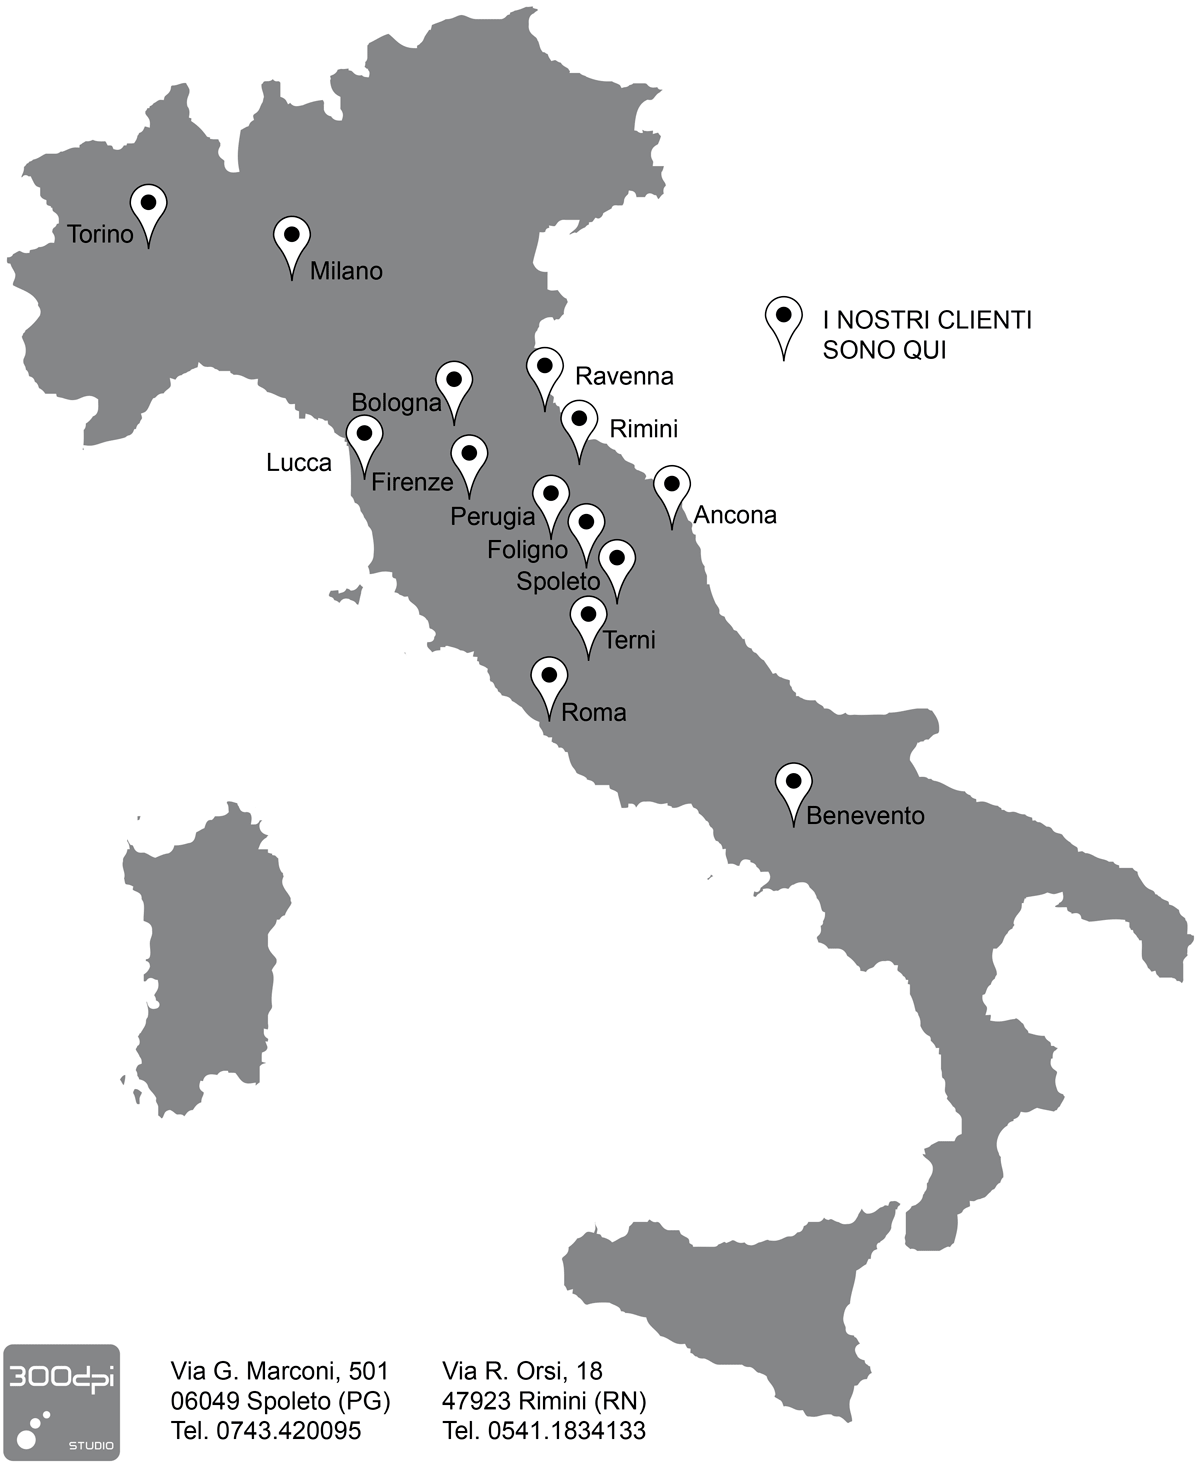 300dpi STUDIO - Mappa Clienti in Italia